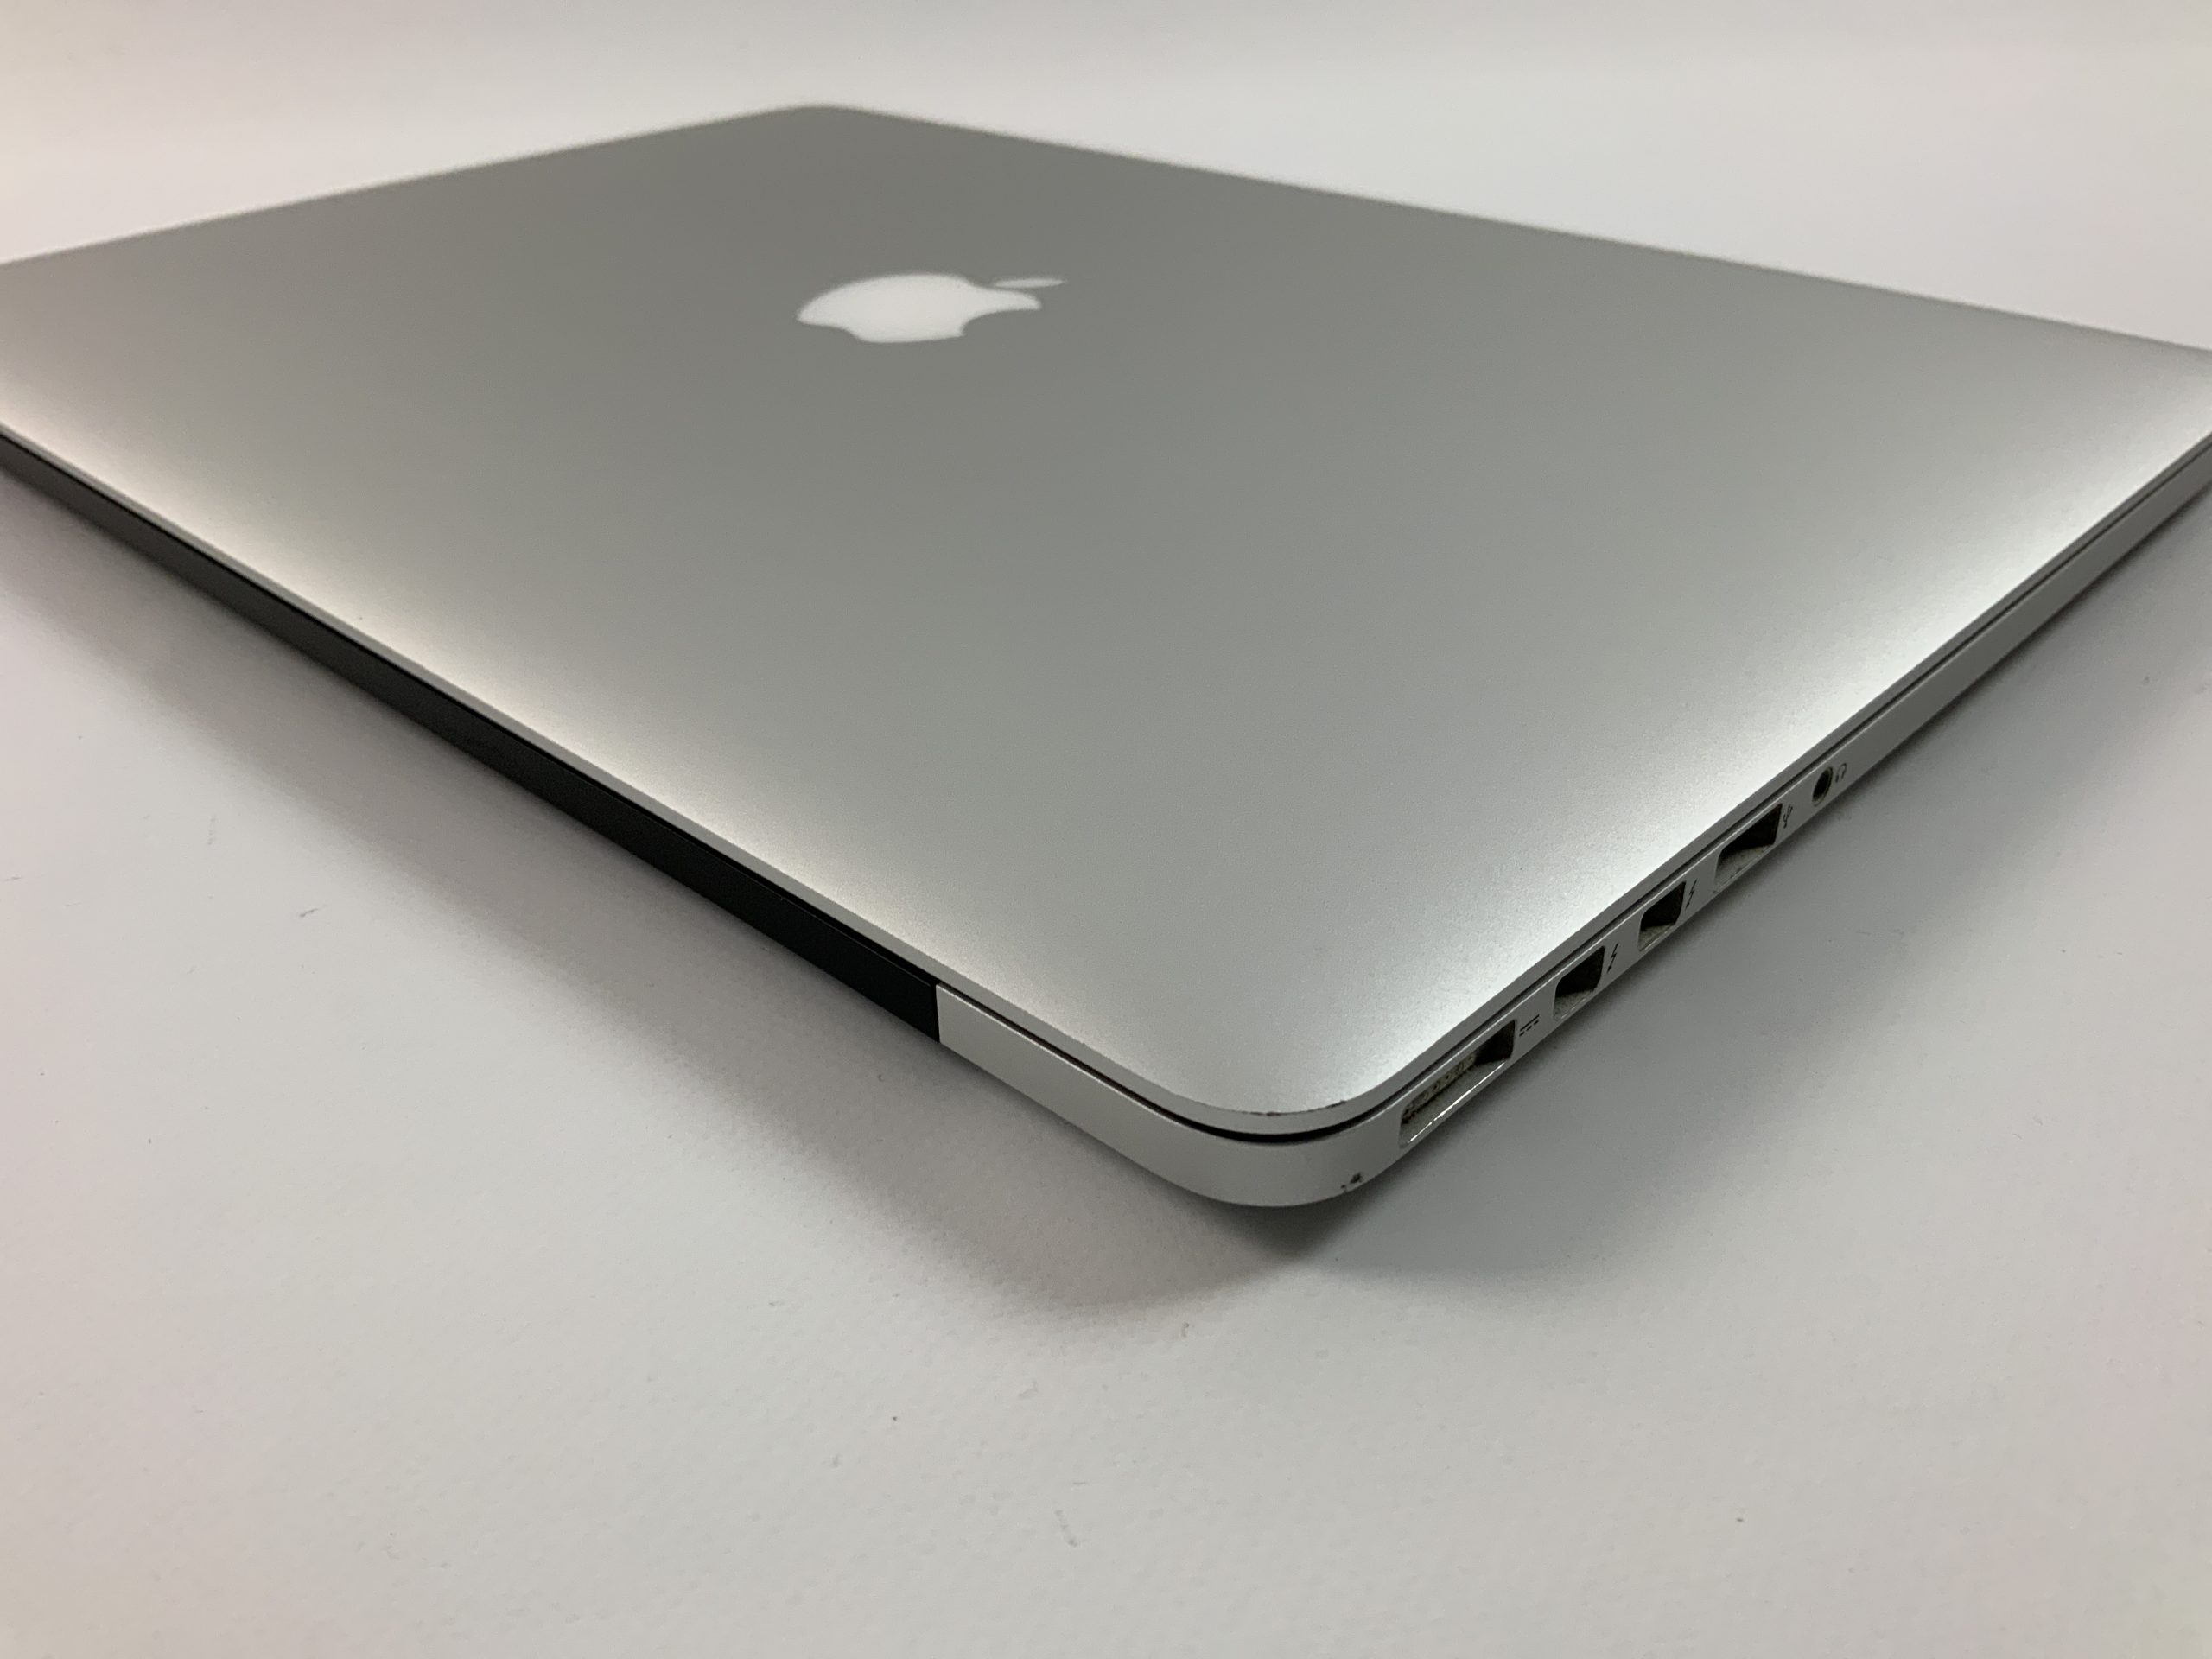 MacBook Pro Retina 15" Mid 2015 (Intel Quad-Core i7 2.8 GHz 16 GB RAM 512 GB SSD), Intel Quad-Core i7 2.8 GHz, 16 GB RAM, 512 GB SSD, immagine 3